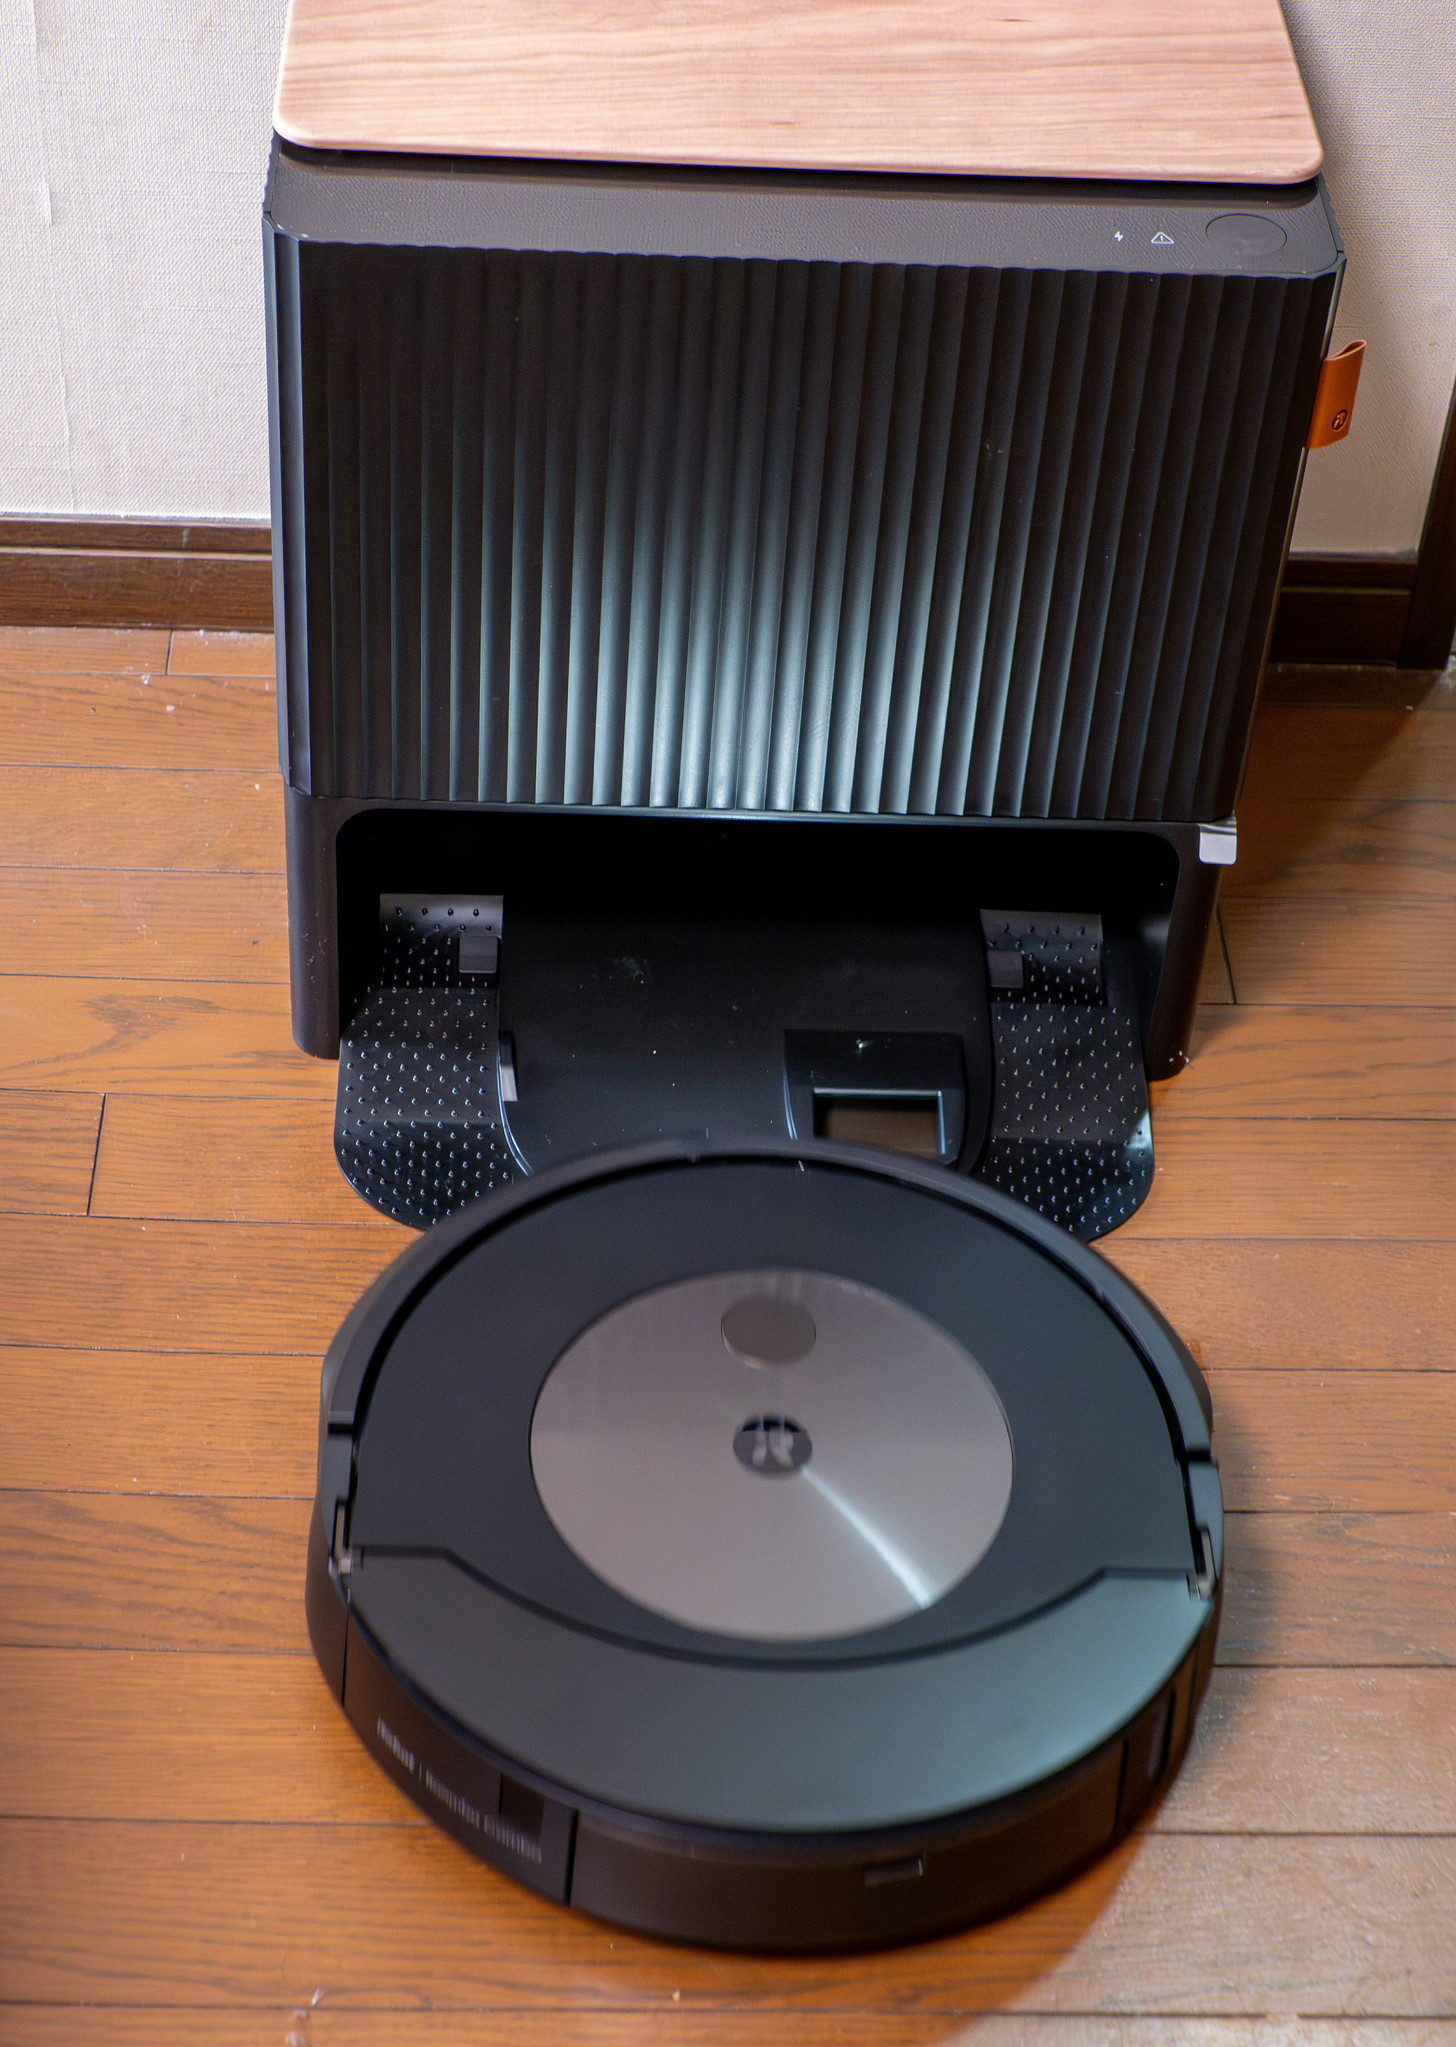 クリーンベースで充電もゴミ収集も給水も自動でできる 掃除・床拭きコンボなルンバ iRobot Roomba Combo j9+ がやってきた #アイロボットファンプログラム